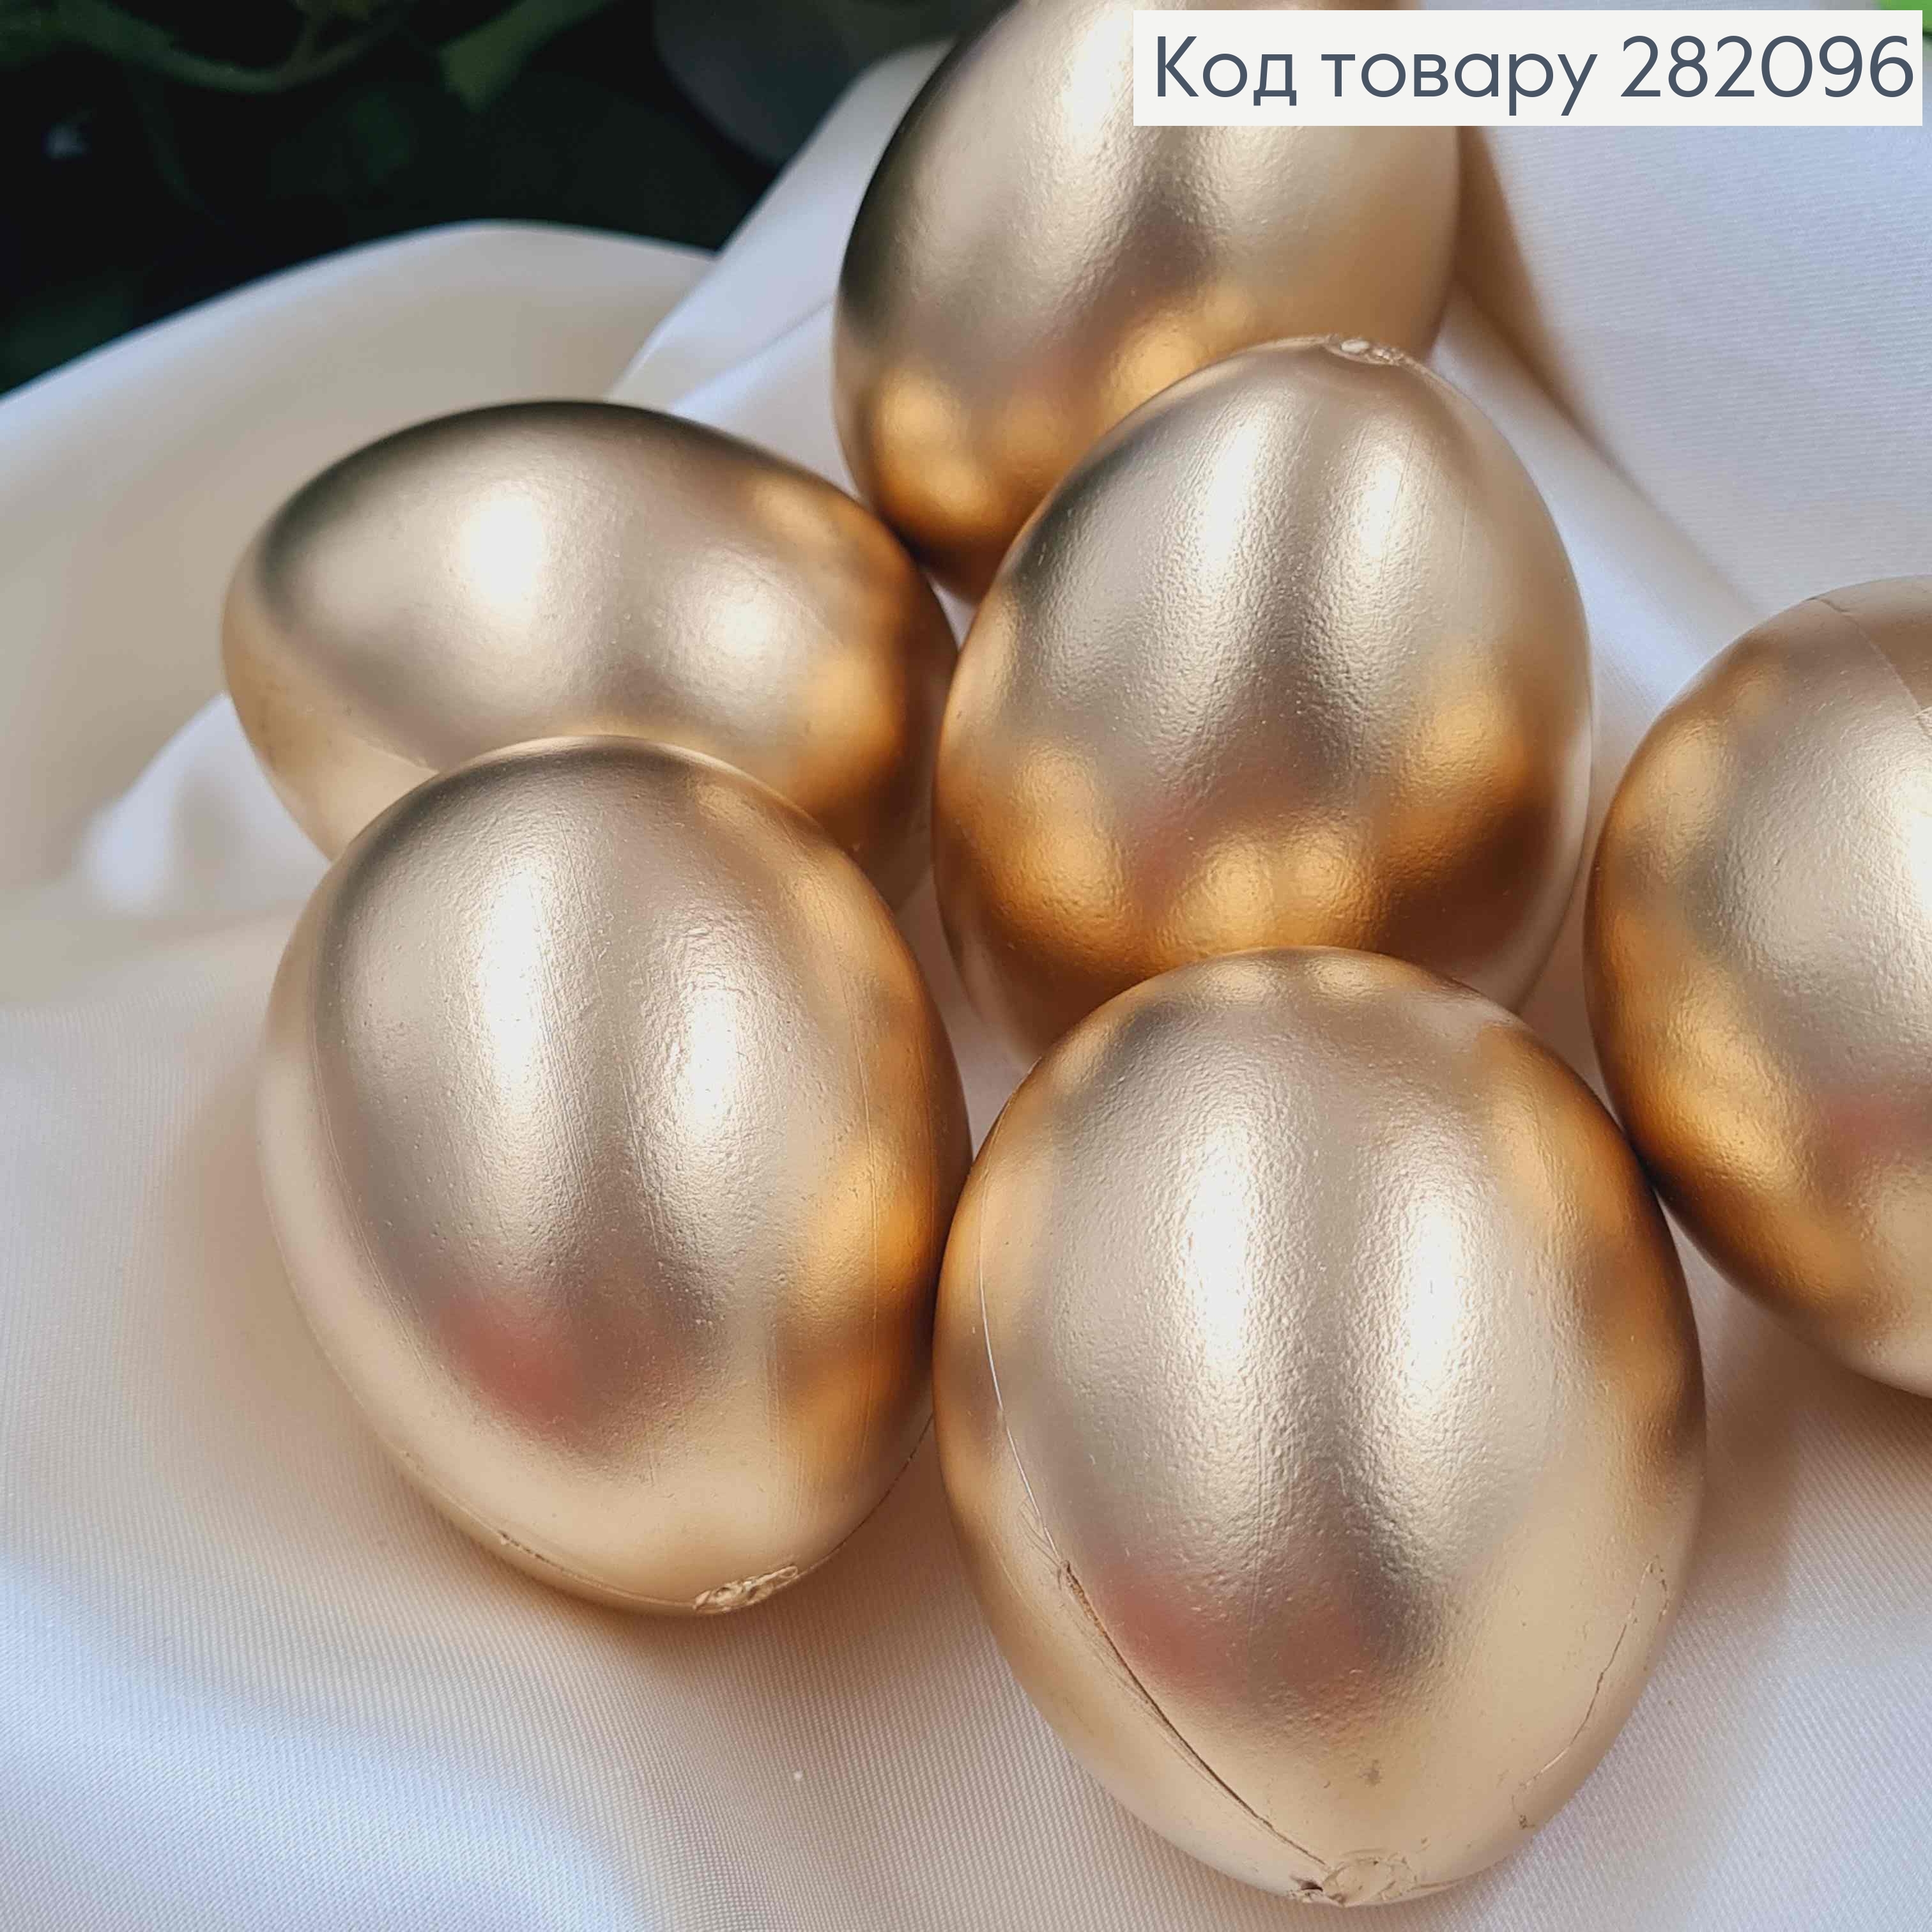 Набор пластиковых яиц (6шт) ЗОЛОТОГО цвета, размер 6*4,5см (как куриные), Украина 282096 фото 2